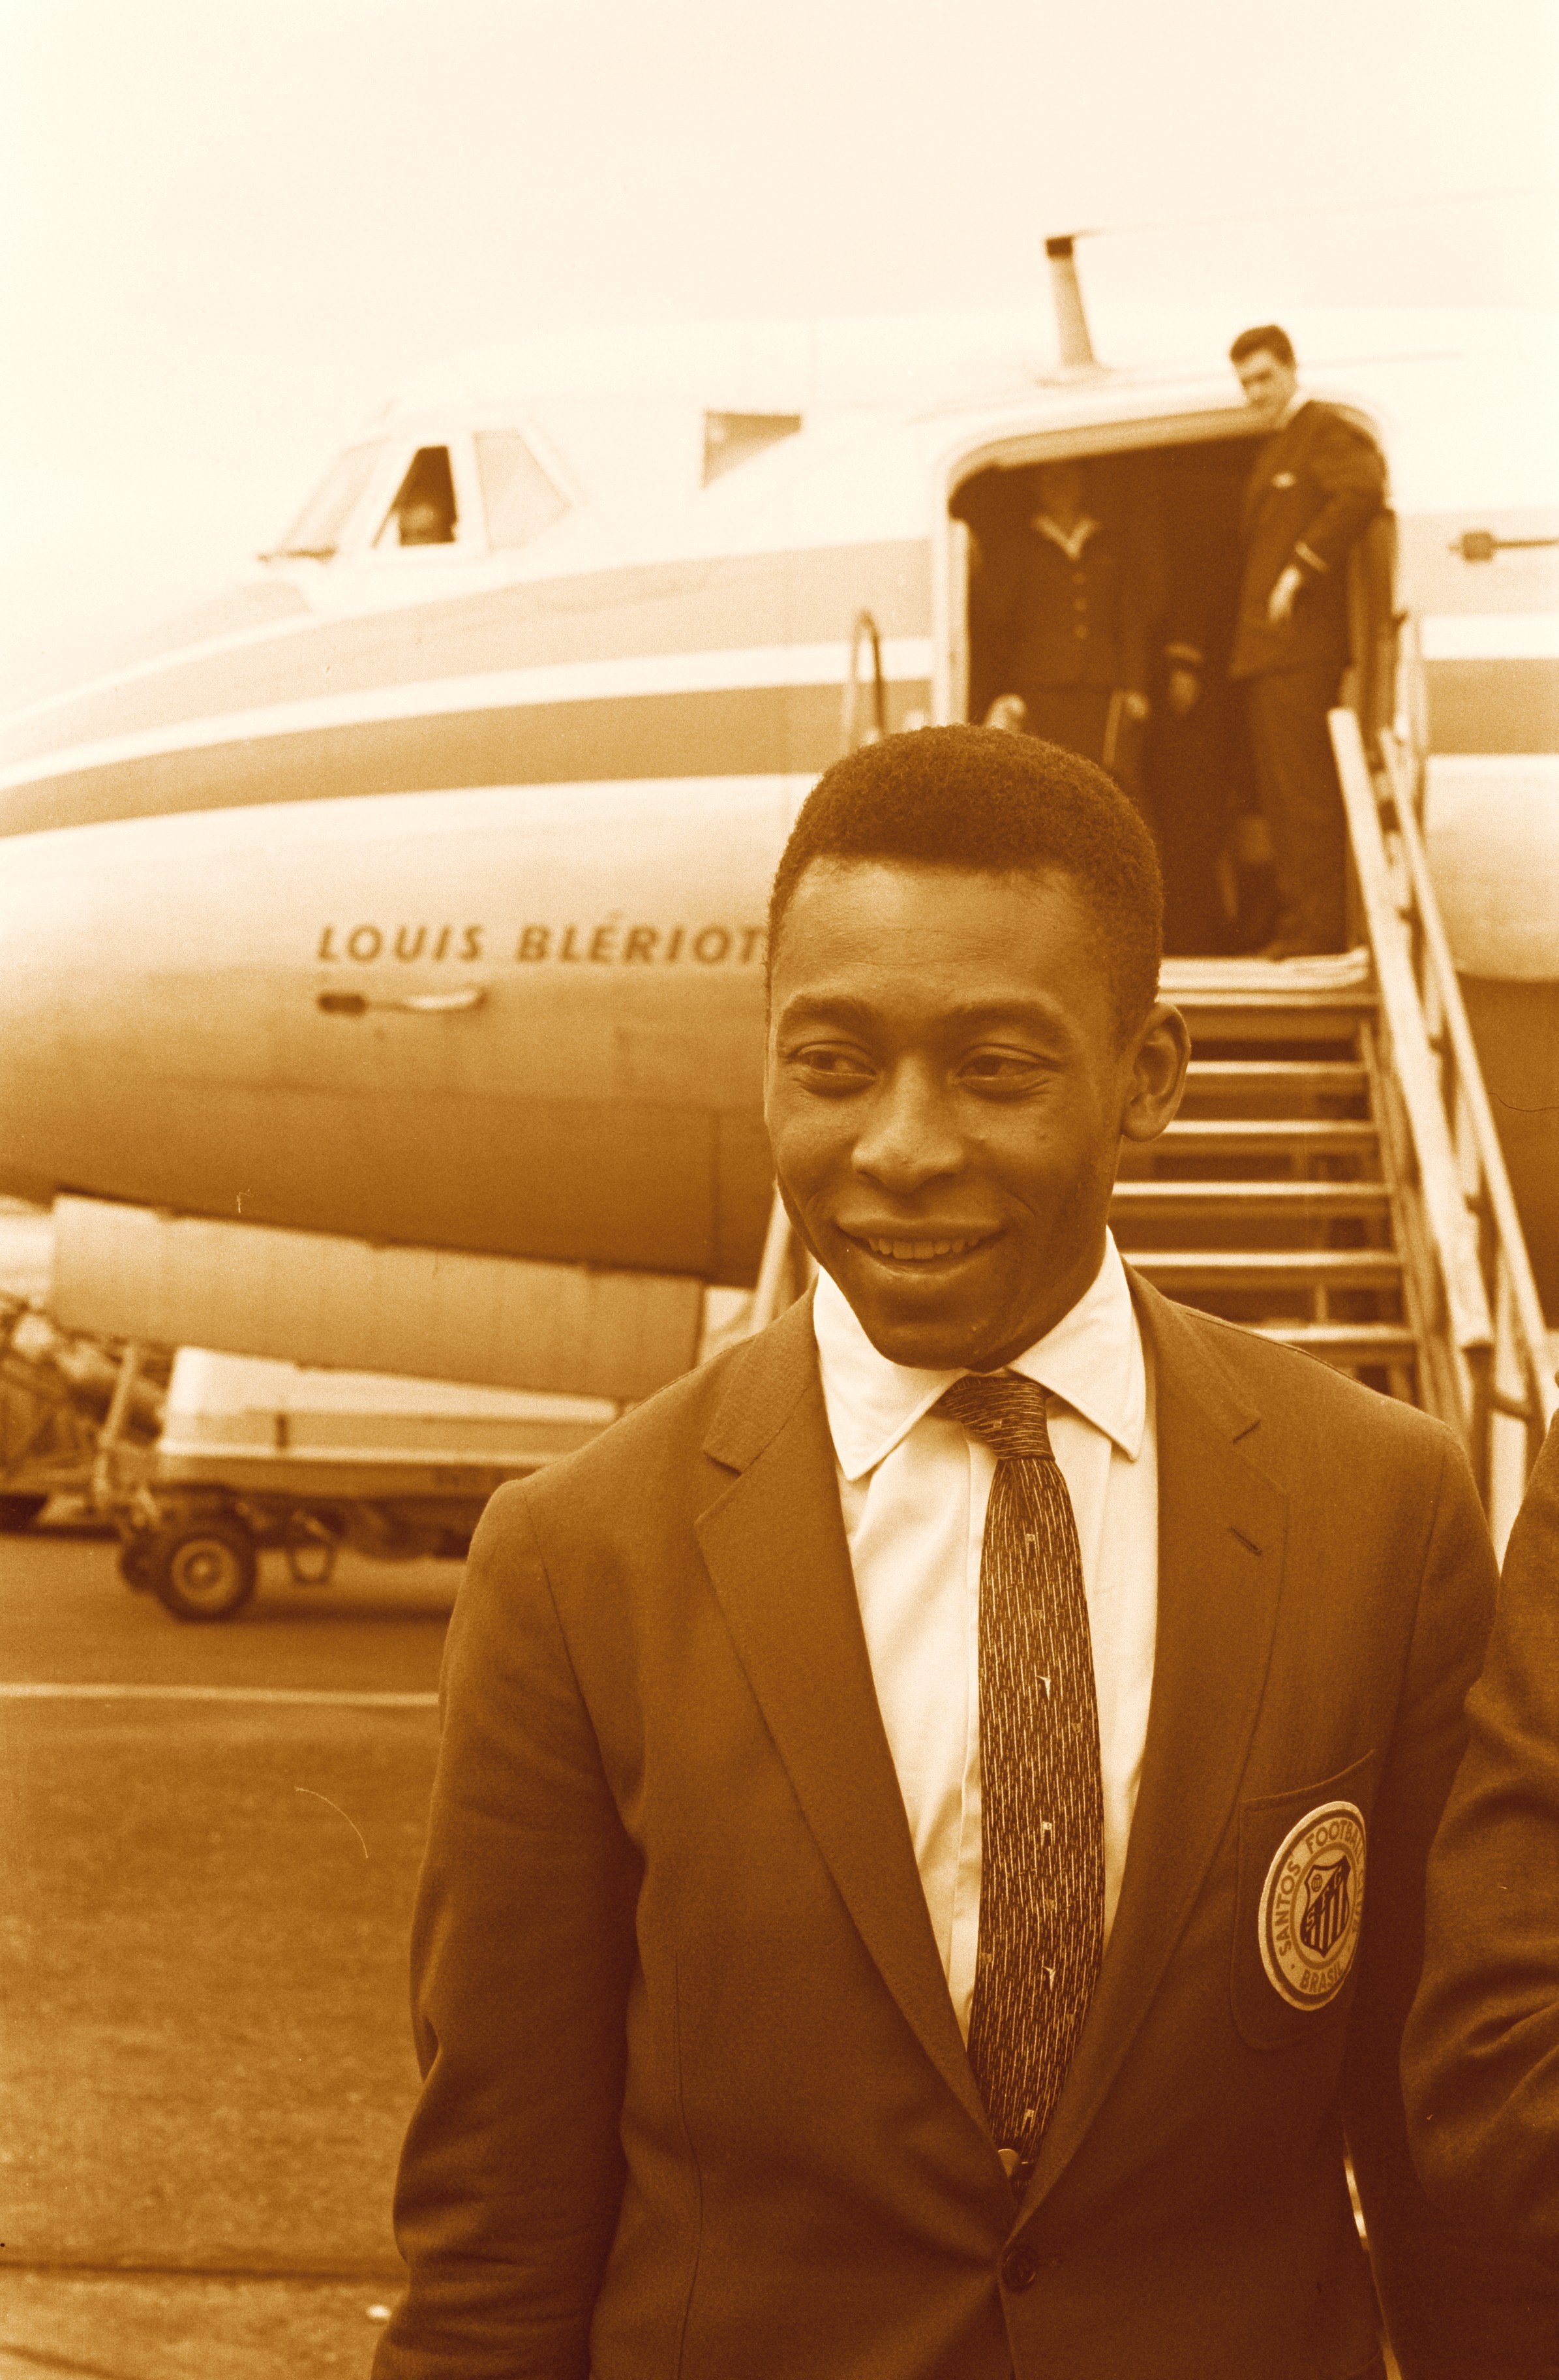 Portades: Tretze dones assassinades i la mort de Pelé